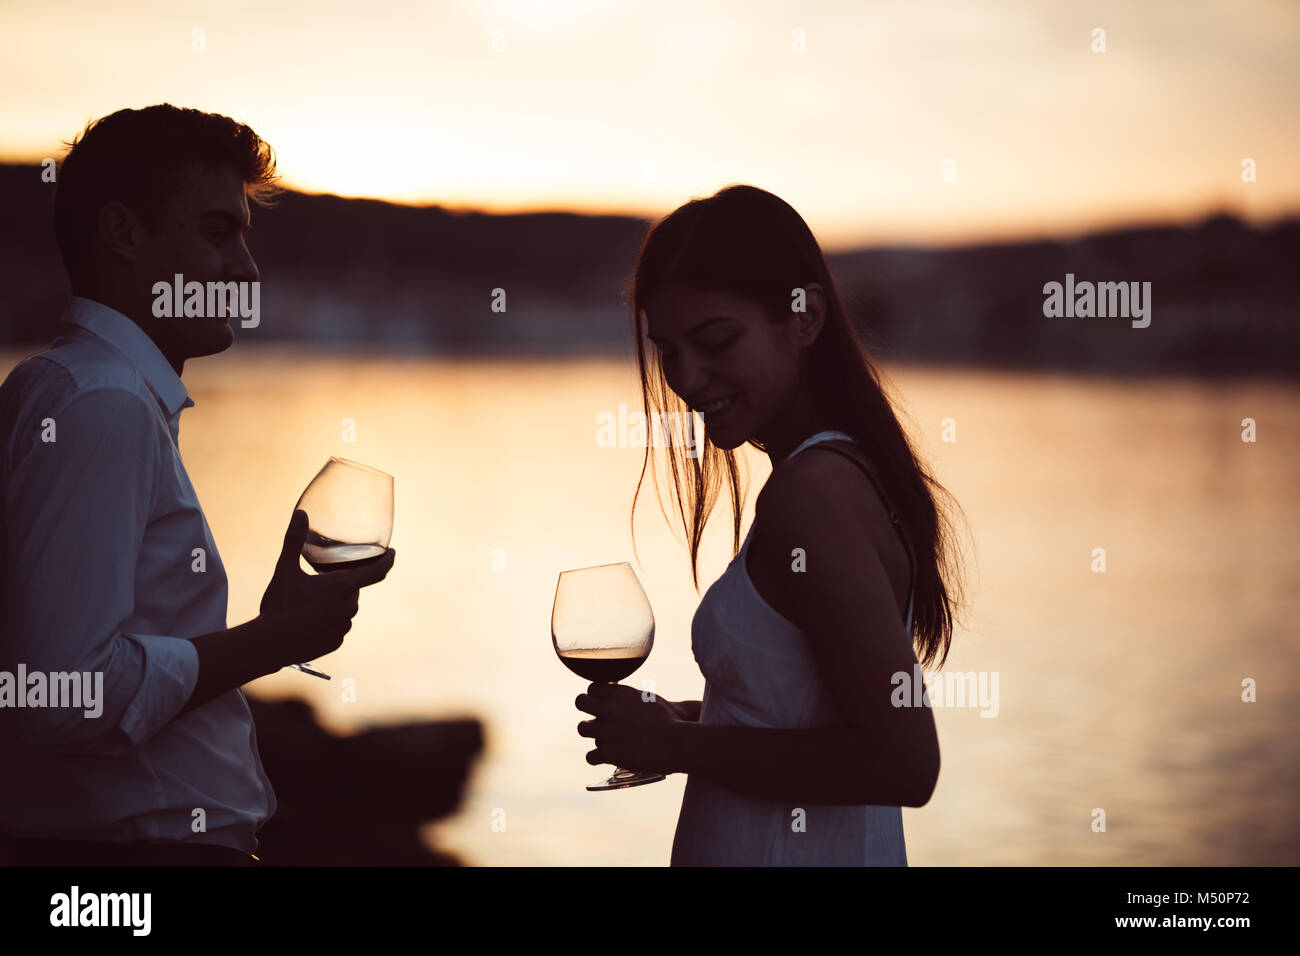 Deux jeunes gens buvant un verre de vin rouge dans le coucher du soleil sur la mer.Une Santé de verre de vin rouge fait maison,la culture méditerranéenne.les climats chauds,mer Banque D'Images